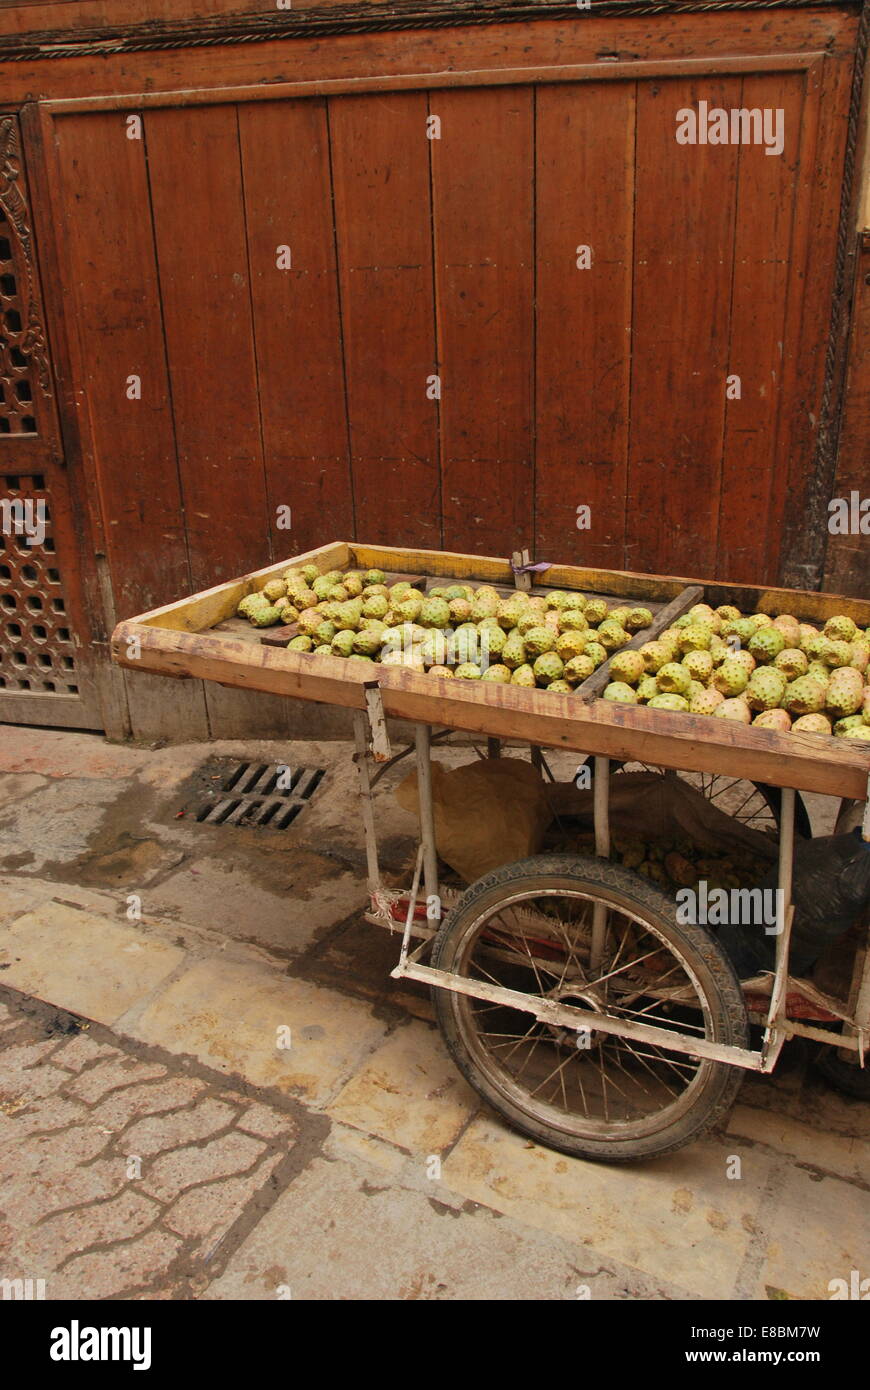 Morocco.Fez. Medina. Kaktus Obst zu verkaufen. Stachelige Birne. Barrow. Mit Ziegeln gedeckten Bereich. Stockfoto